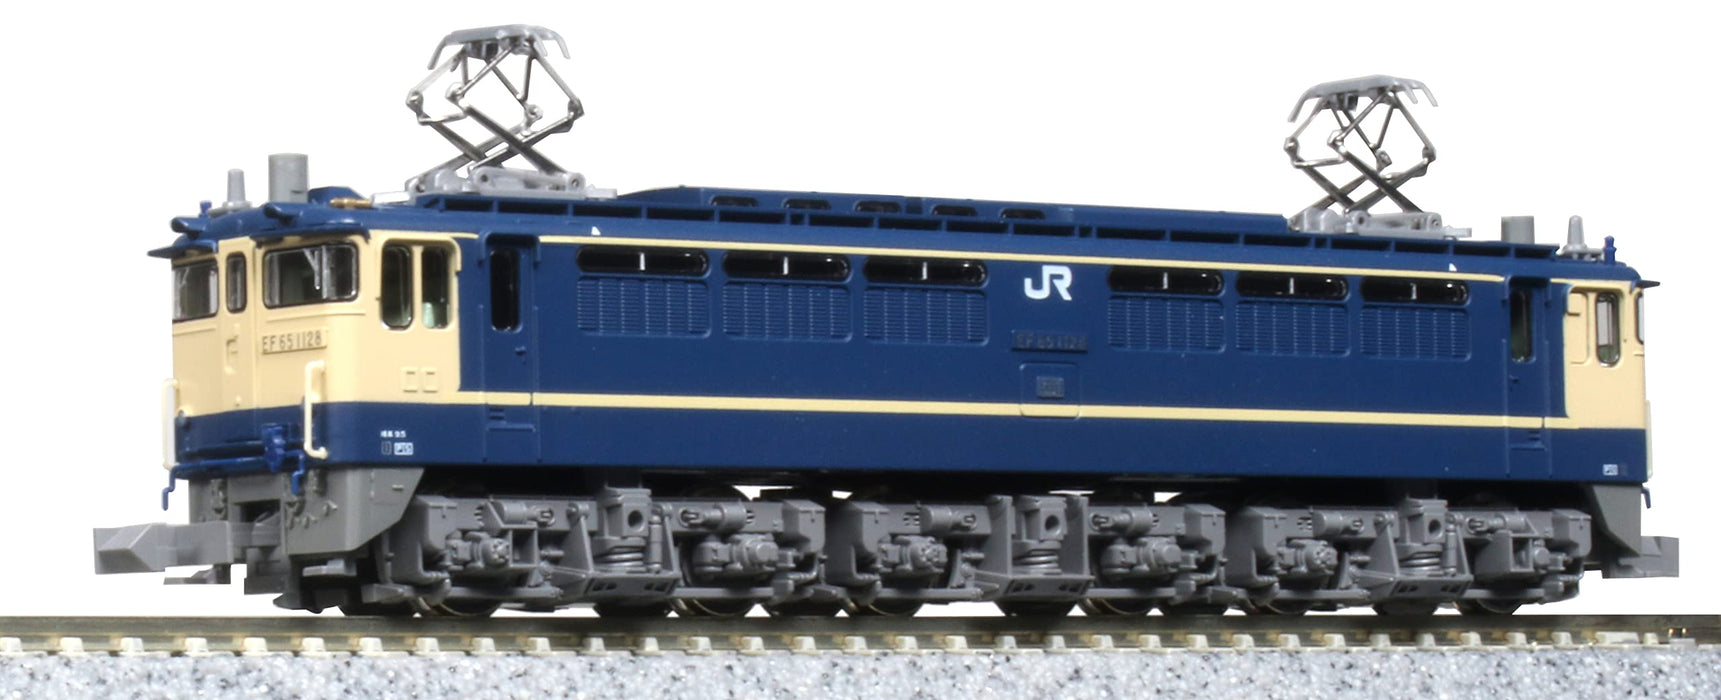 Kato N Gauge Ef65 1000 Loco 3061-6 Railway Model